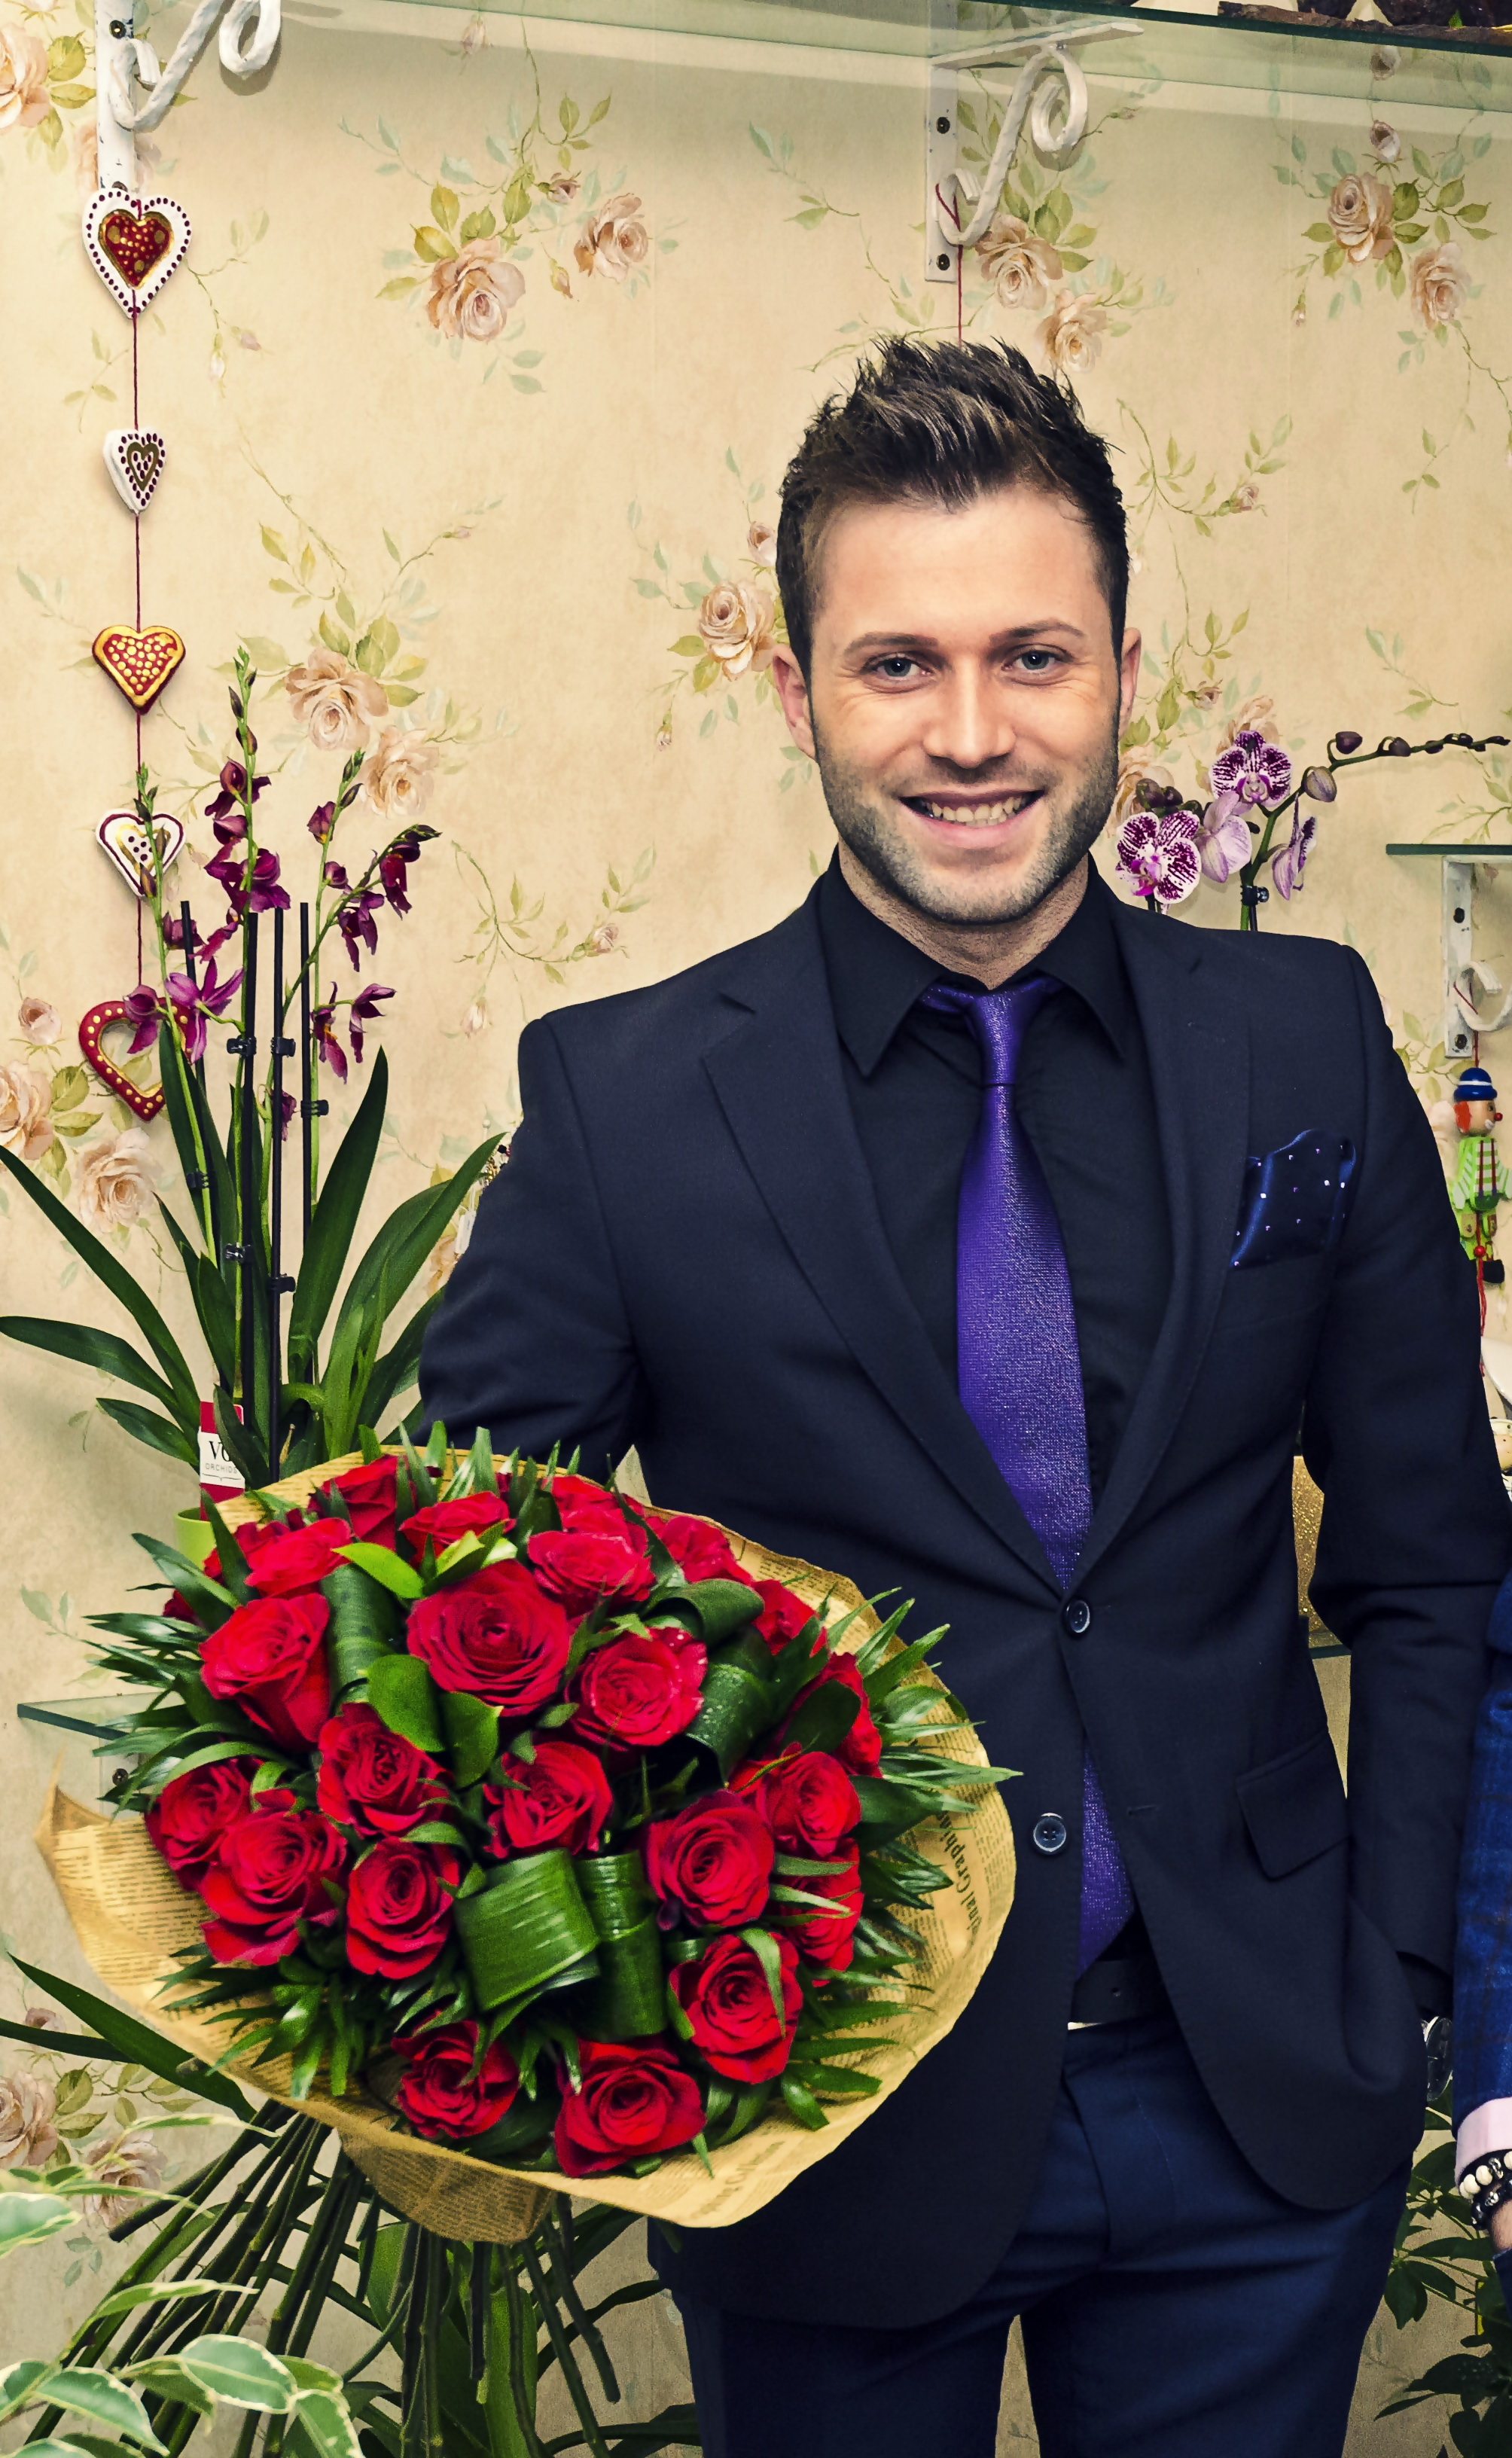 Andrei vrea sa ofere flori unei domnisoare de Ziua Indragostitilor